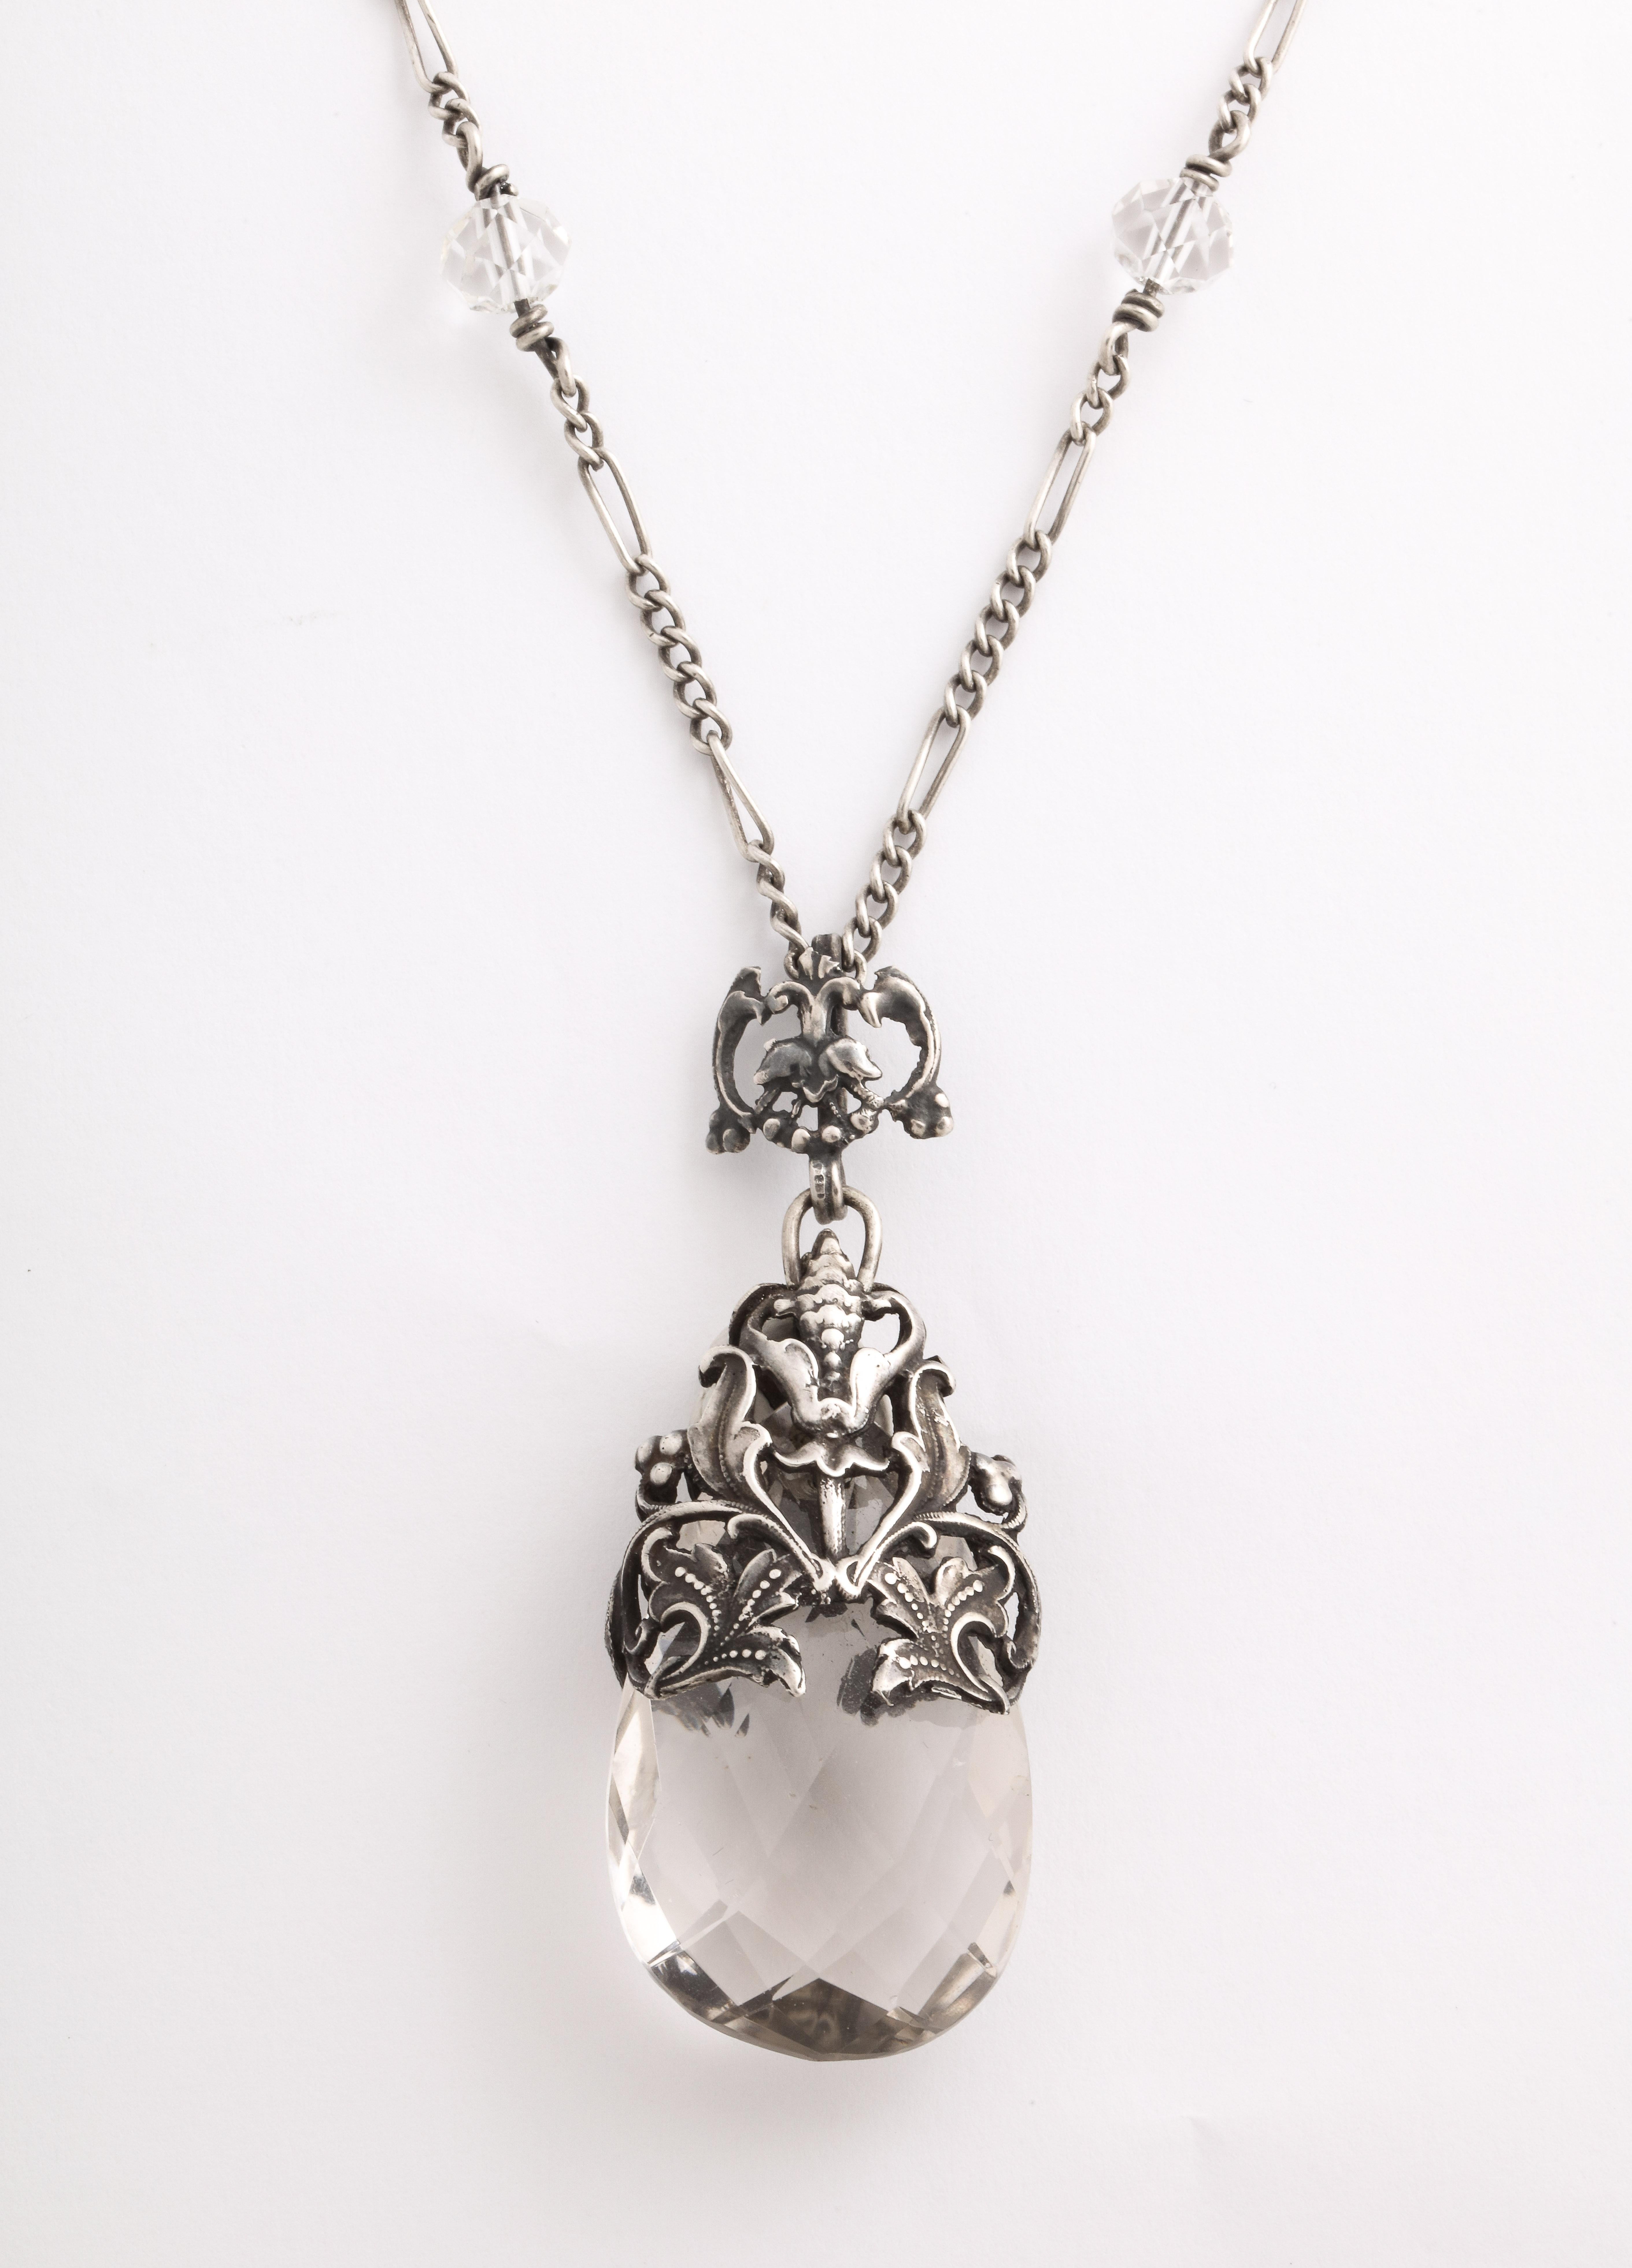 Eine wunderschön gestaltete Bergkristall-Halskette aus der Zeit des Jugendstils. Der Kristall ist anmutig in gravierte Blätter und Knospen aus Sterling eingewickelt. Der Bergkristall ist diagonal facettiert. Die Kette ist original und wird mit dem